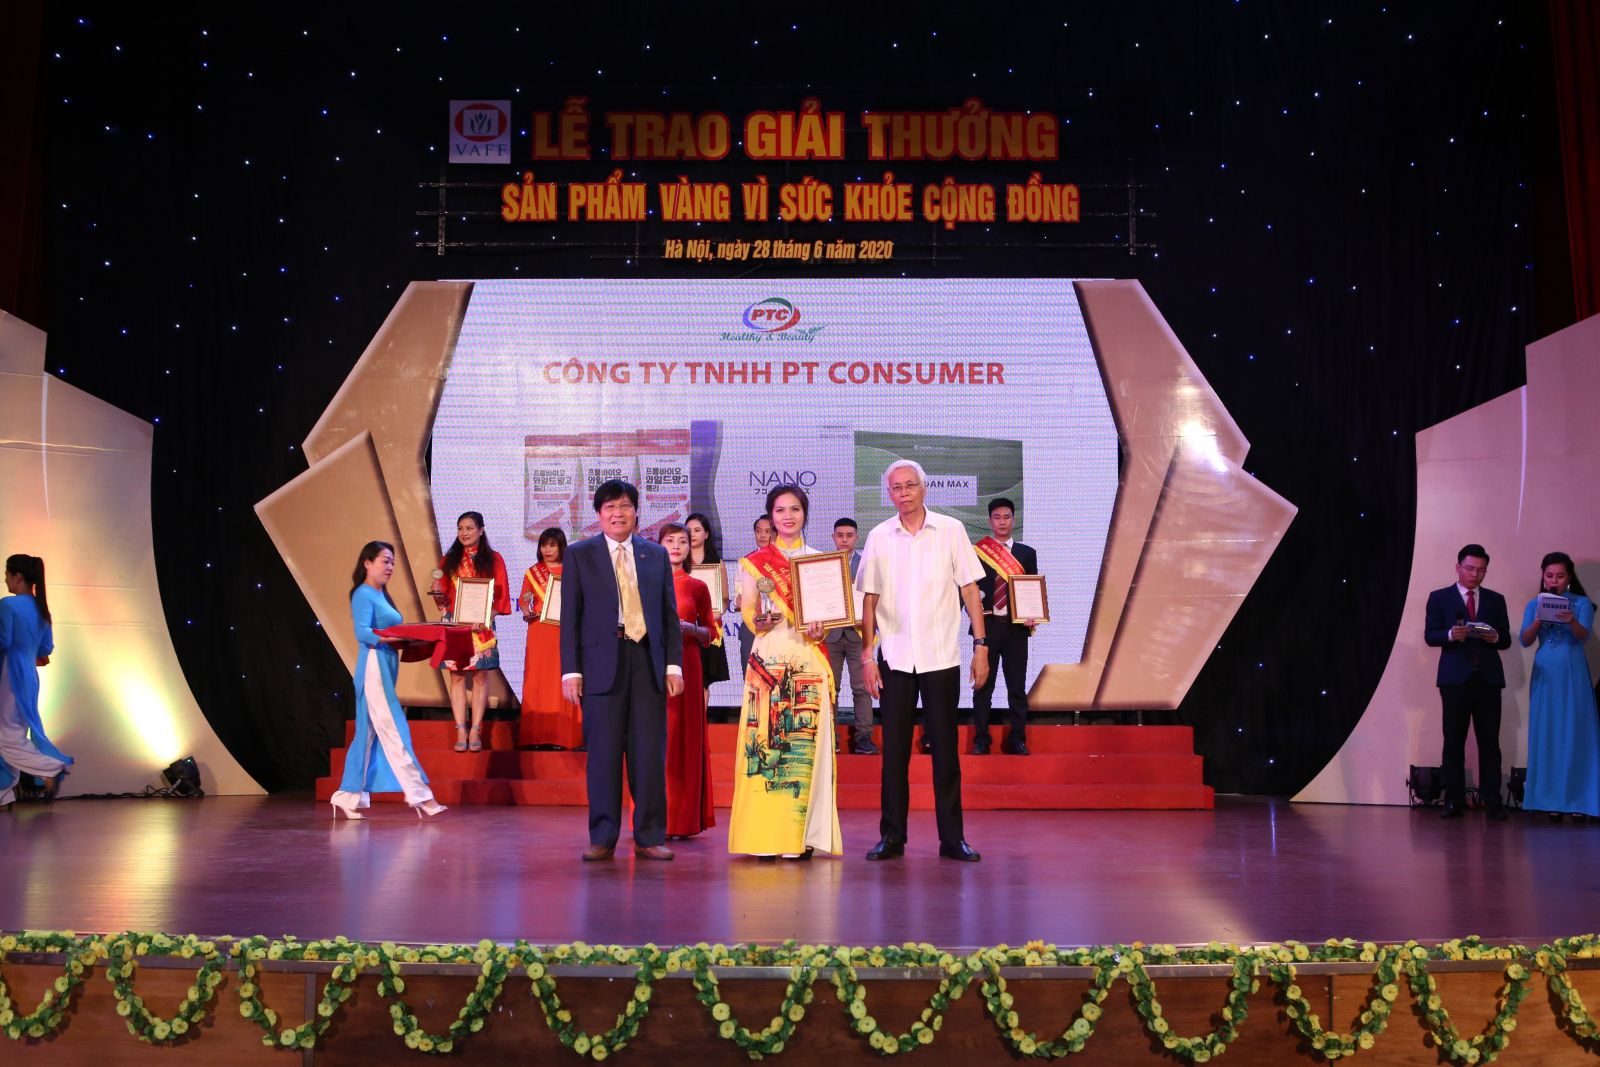 Nanao Fucoidan đạt giải thưởng Sản phẩm vàng vì sức khỏe cộng đồng 2020 a